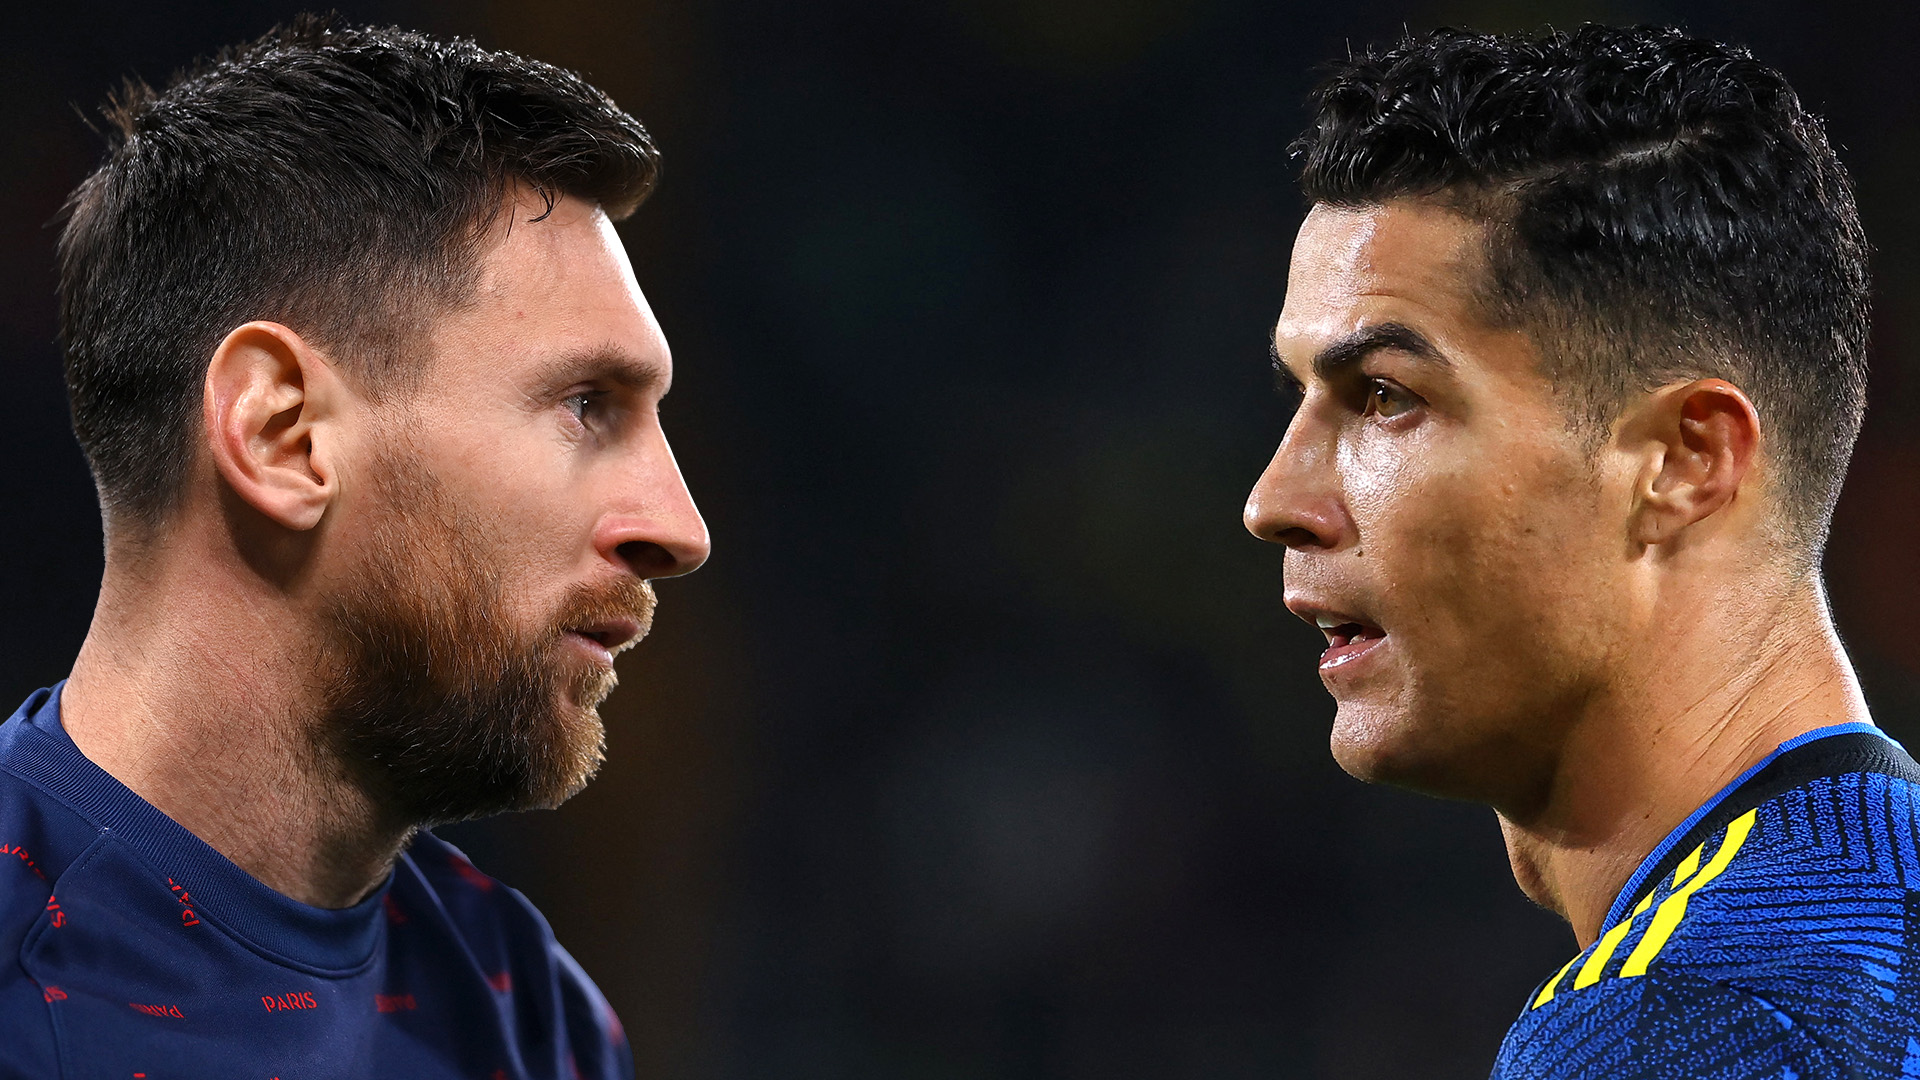 Las dos últimas máximas estrellas del futbol podrían a reencontrarse dentro de una cancha años después. (Foto Prensa Libre: Universal)